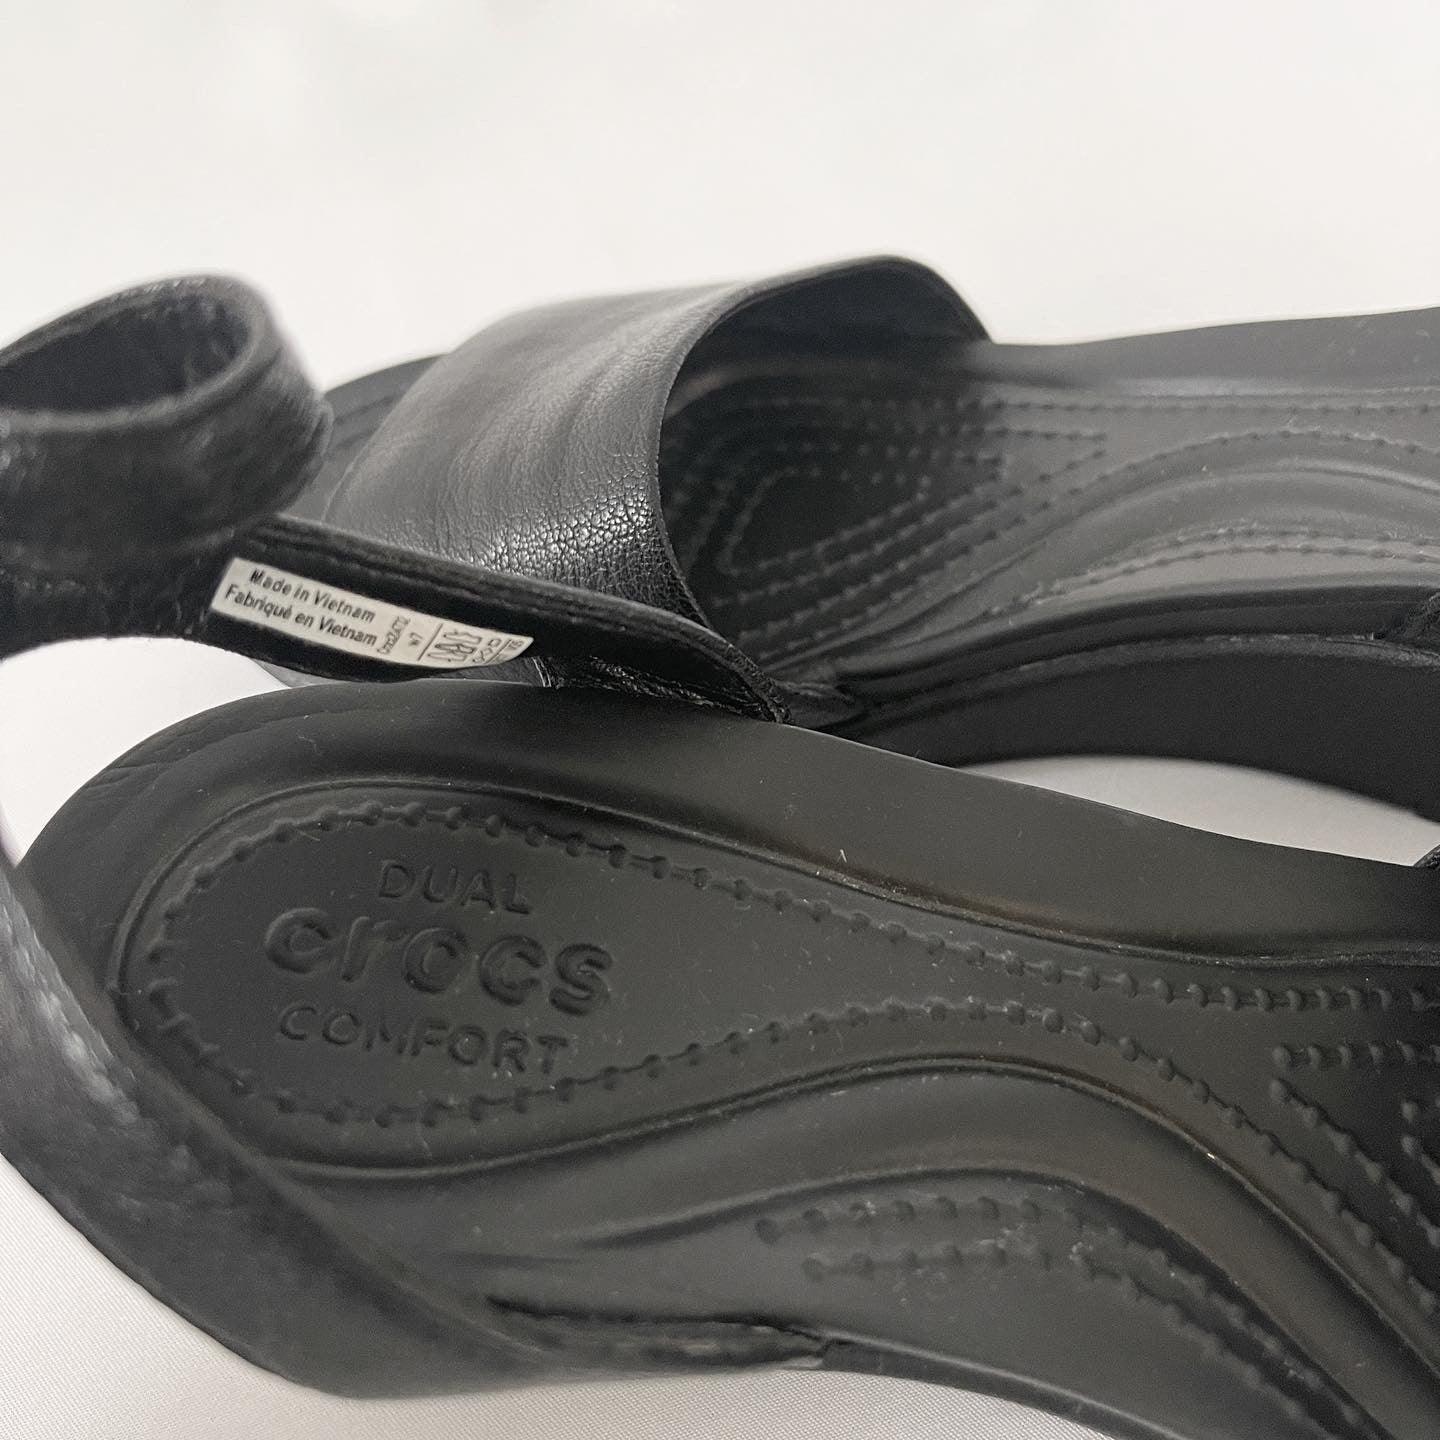 CROCS - CROCS sandals - AVVIIVVA.COM